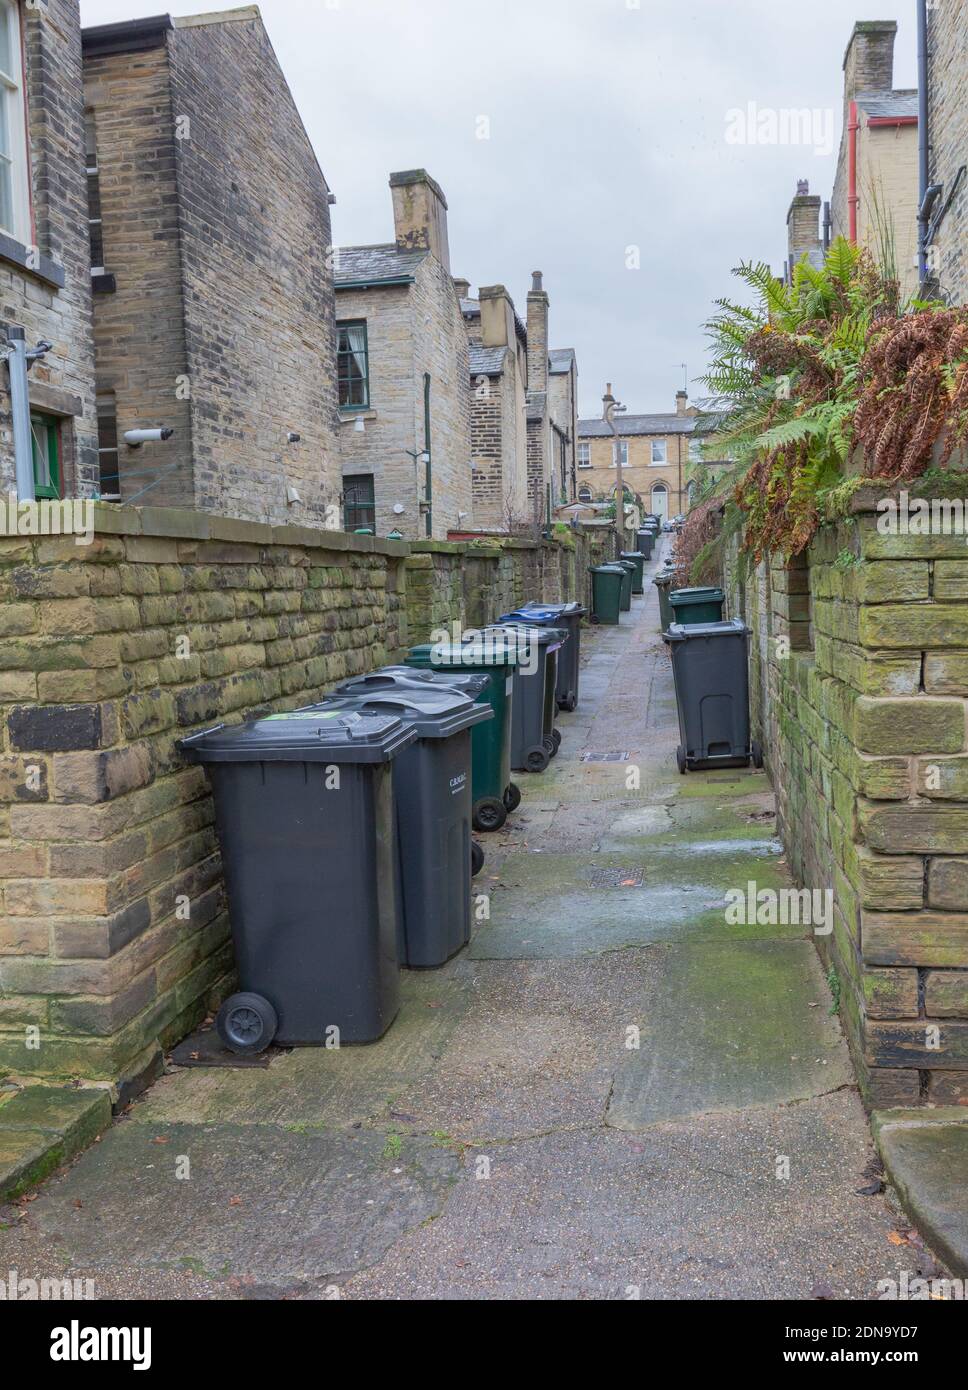 Wheelie bins in an alleyway between terraced housing in Saltaire, Yorkshire, England. Stock Photo